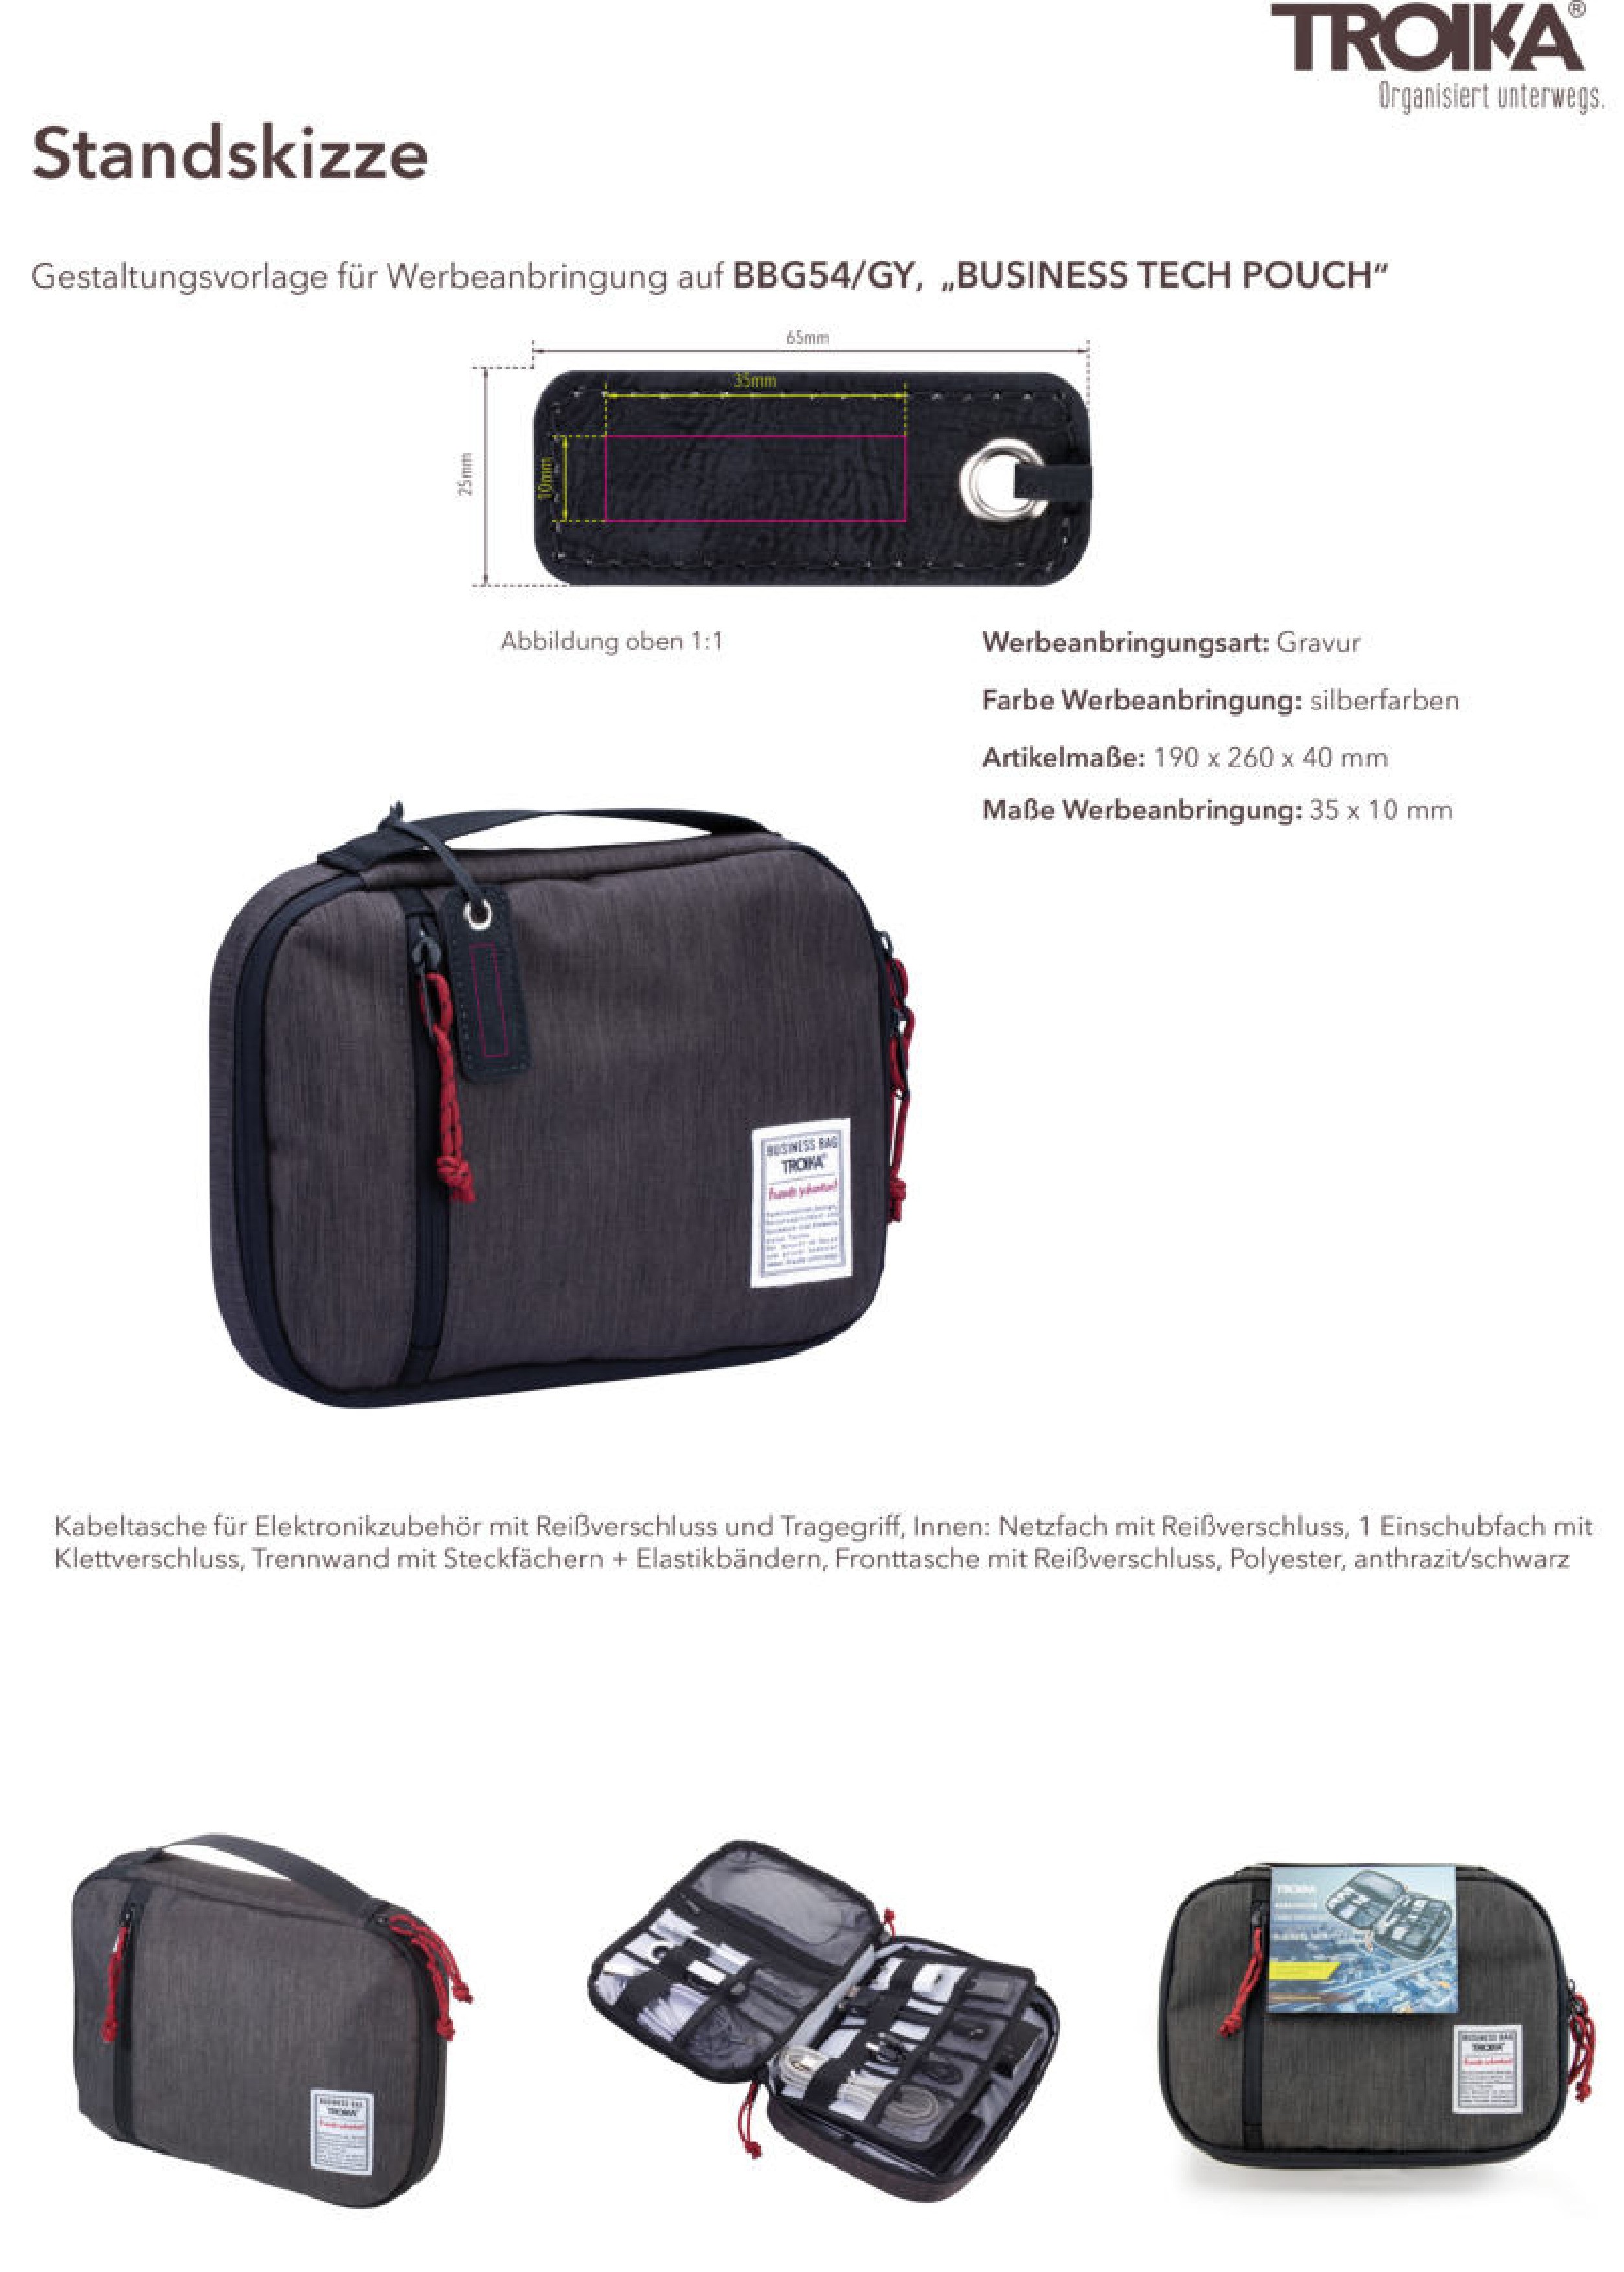 FINPAC Elektronische Tasche Kabeltasche - Elektronik zubehör